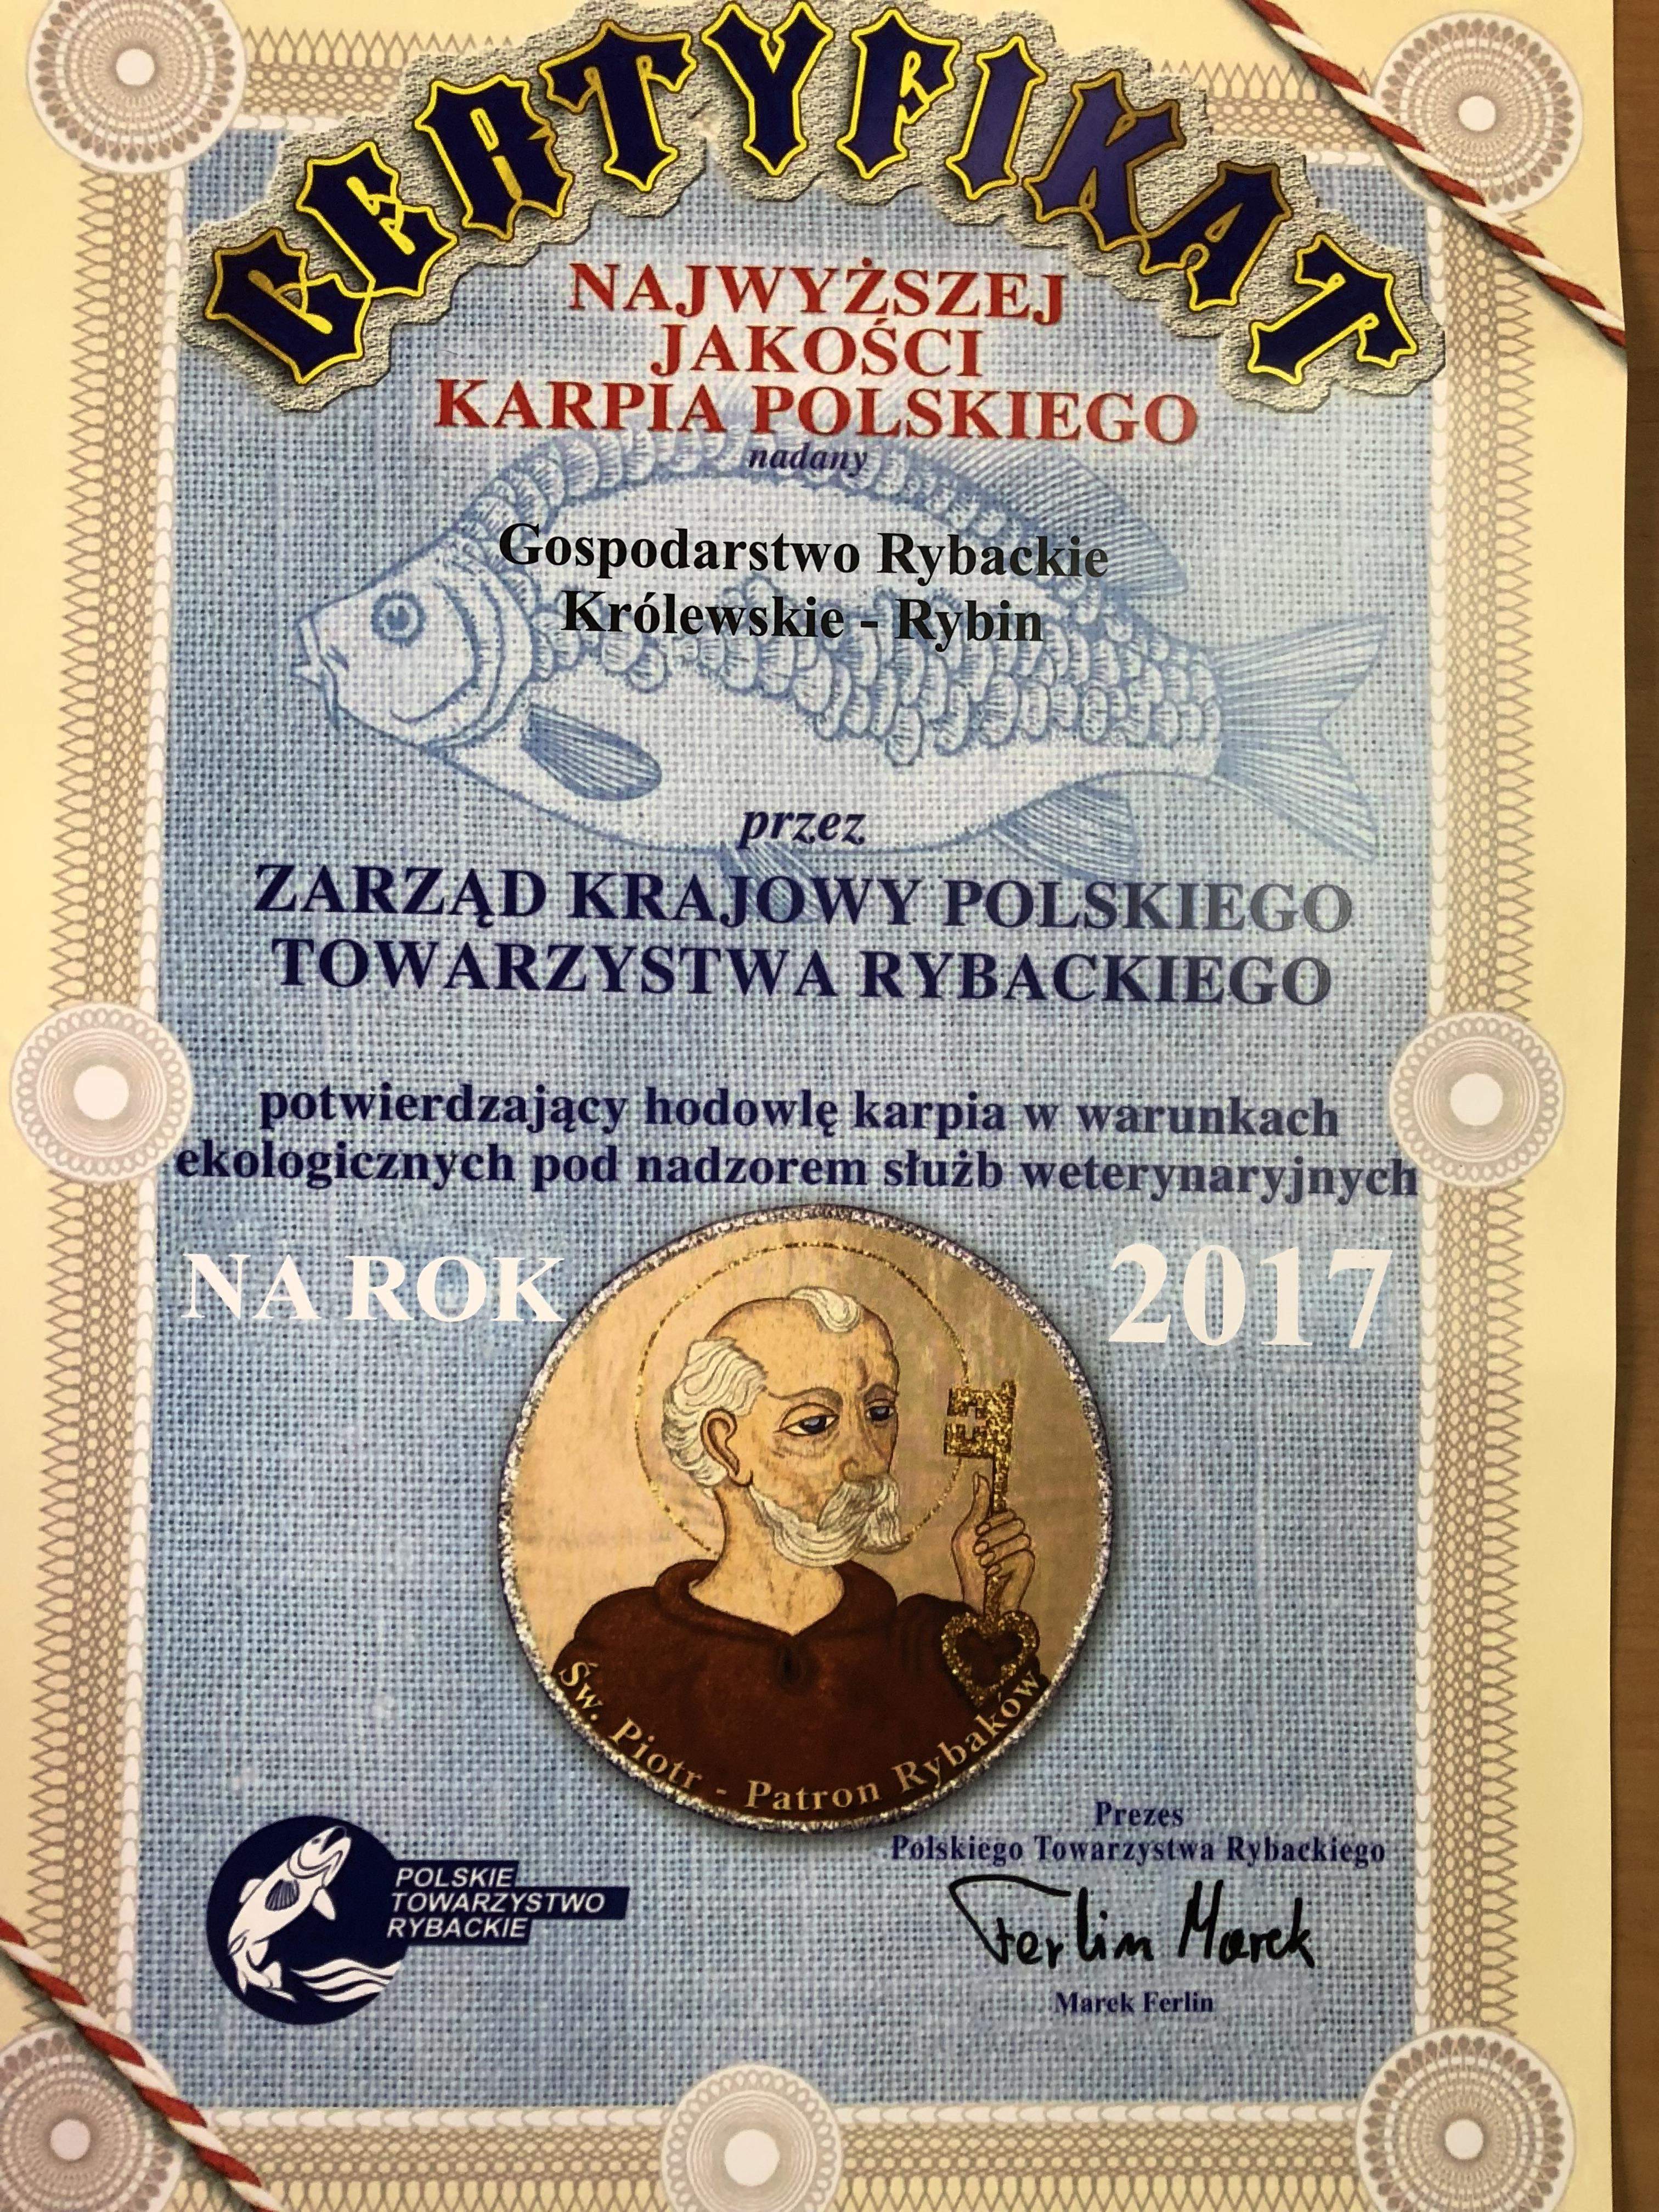 Certyfikat Polskiego Towarzystwa Rybackiego na 2017 rok